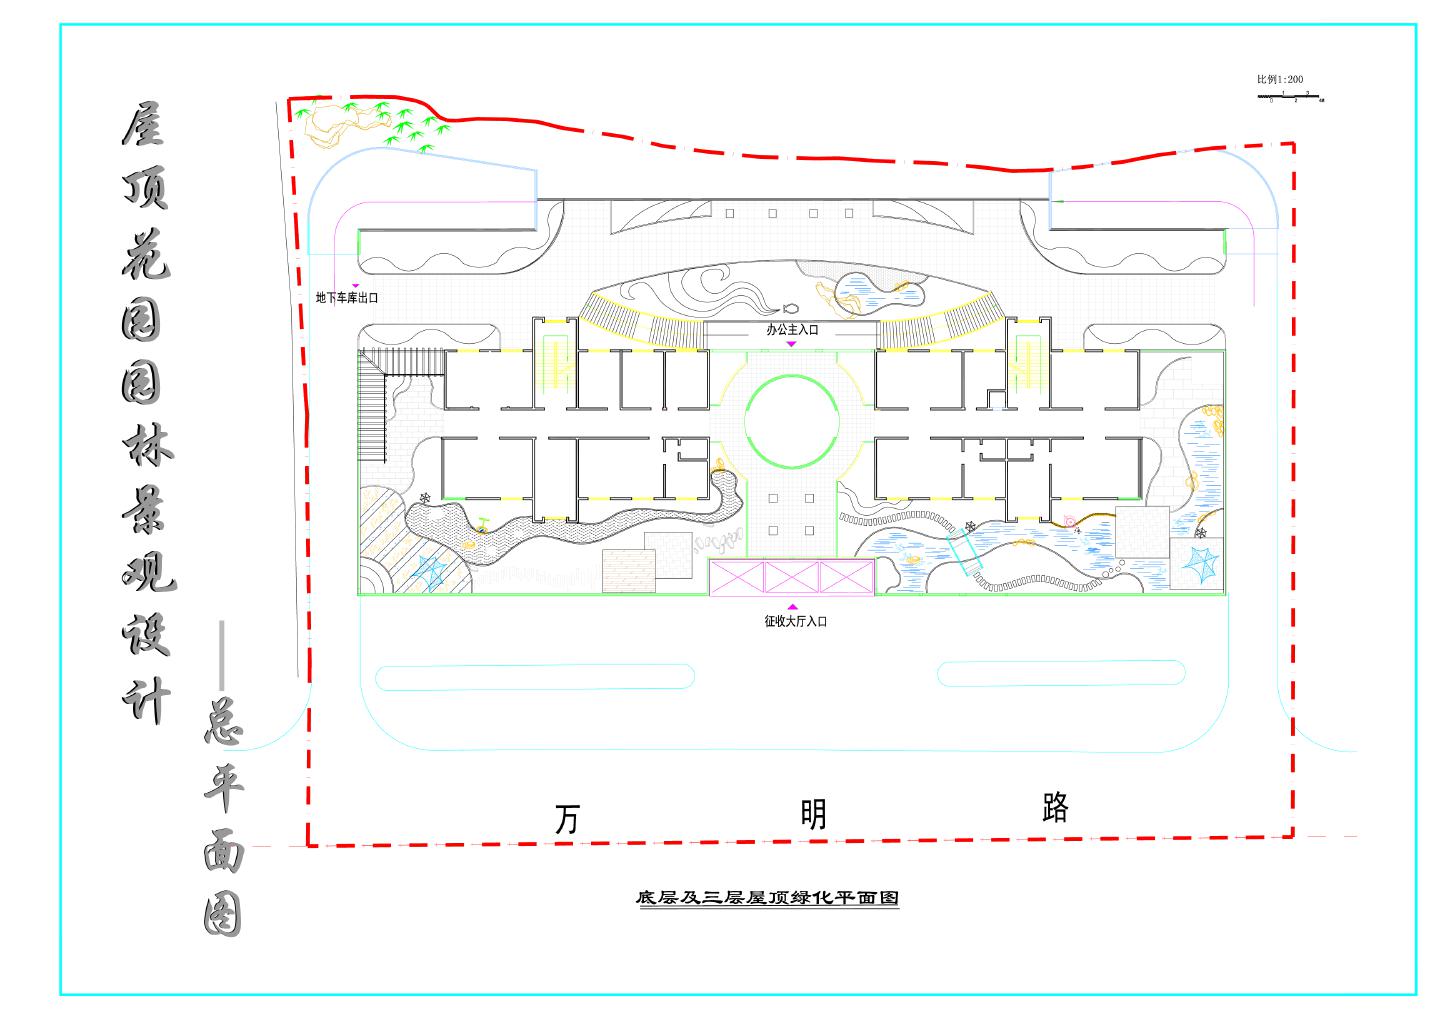 征收大厅建筑屋顶花园园林景观设计总平面图（底层及三层屋顶绿化平面图 种植平面图）